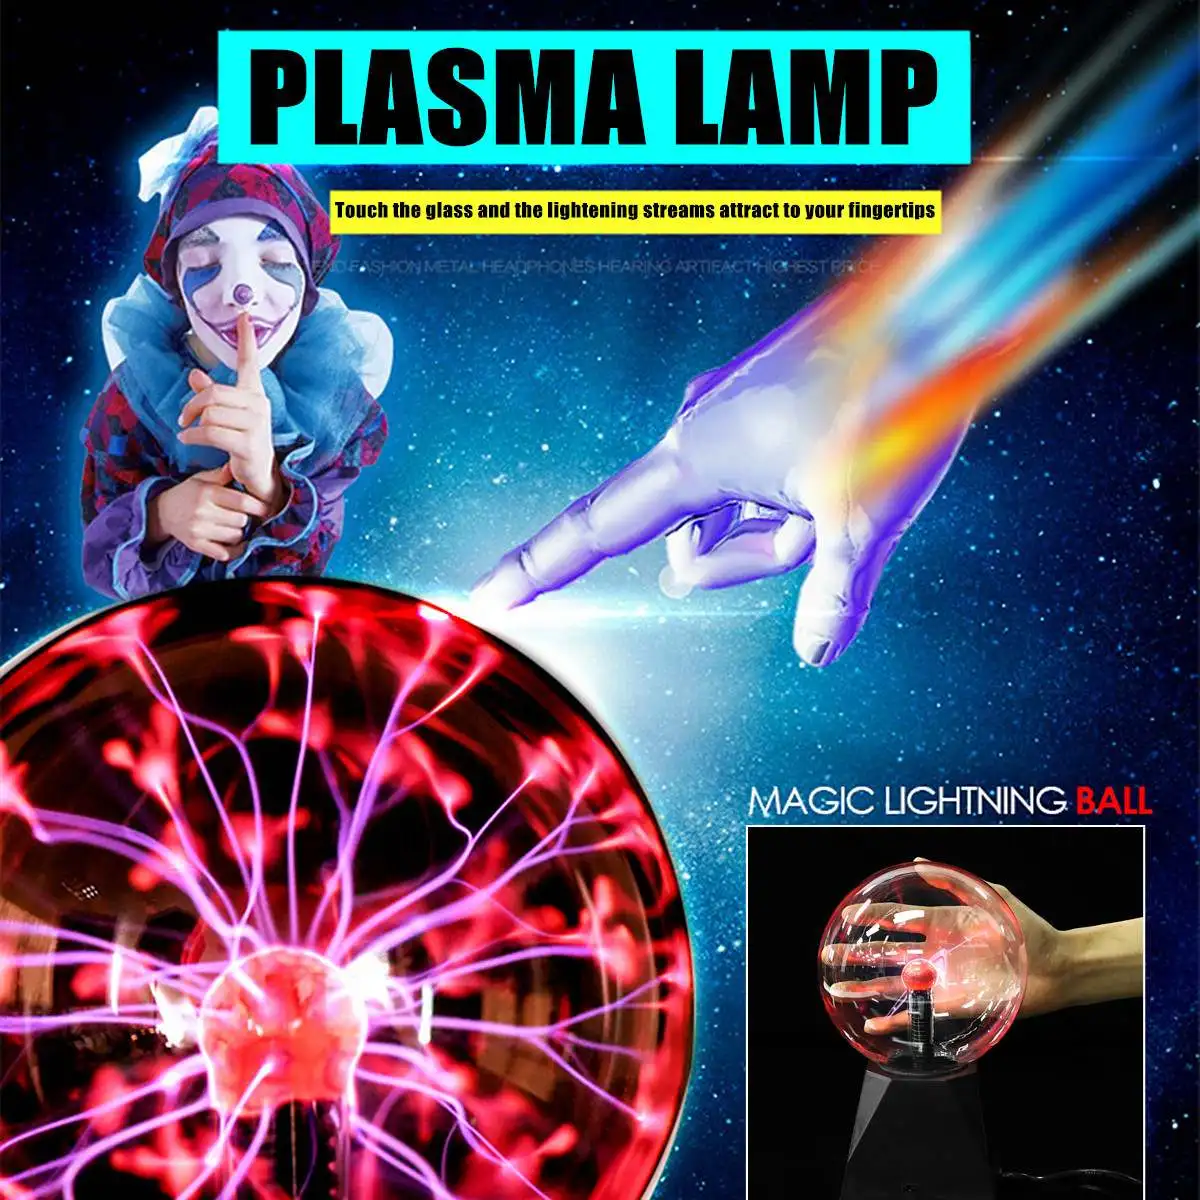 ЕС плагин кристалл 5/6/8 дюймовый плазменный-молния мяч волшебная освещения сферическая лампа свет сенсорный Настольная лампа Новинка Night